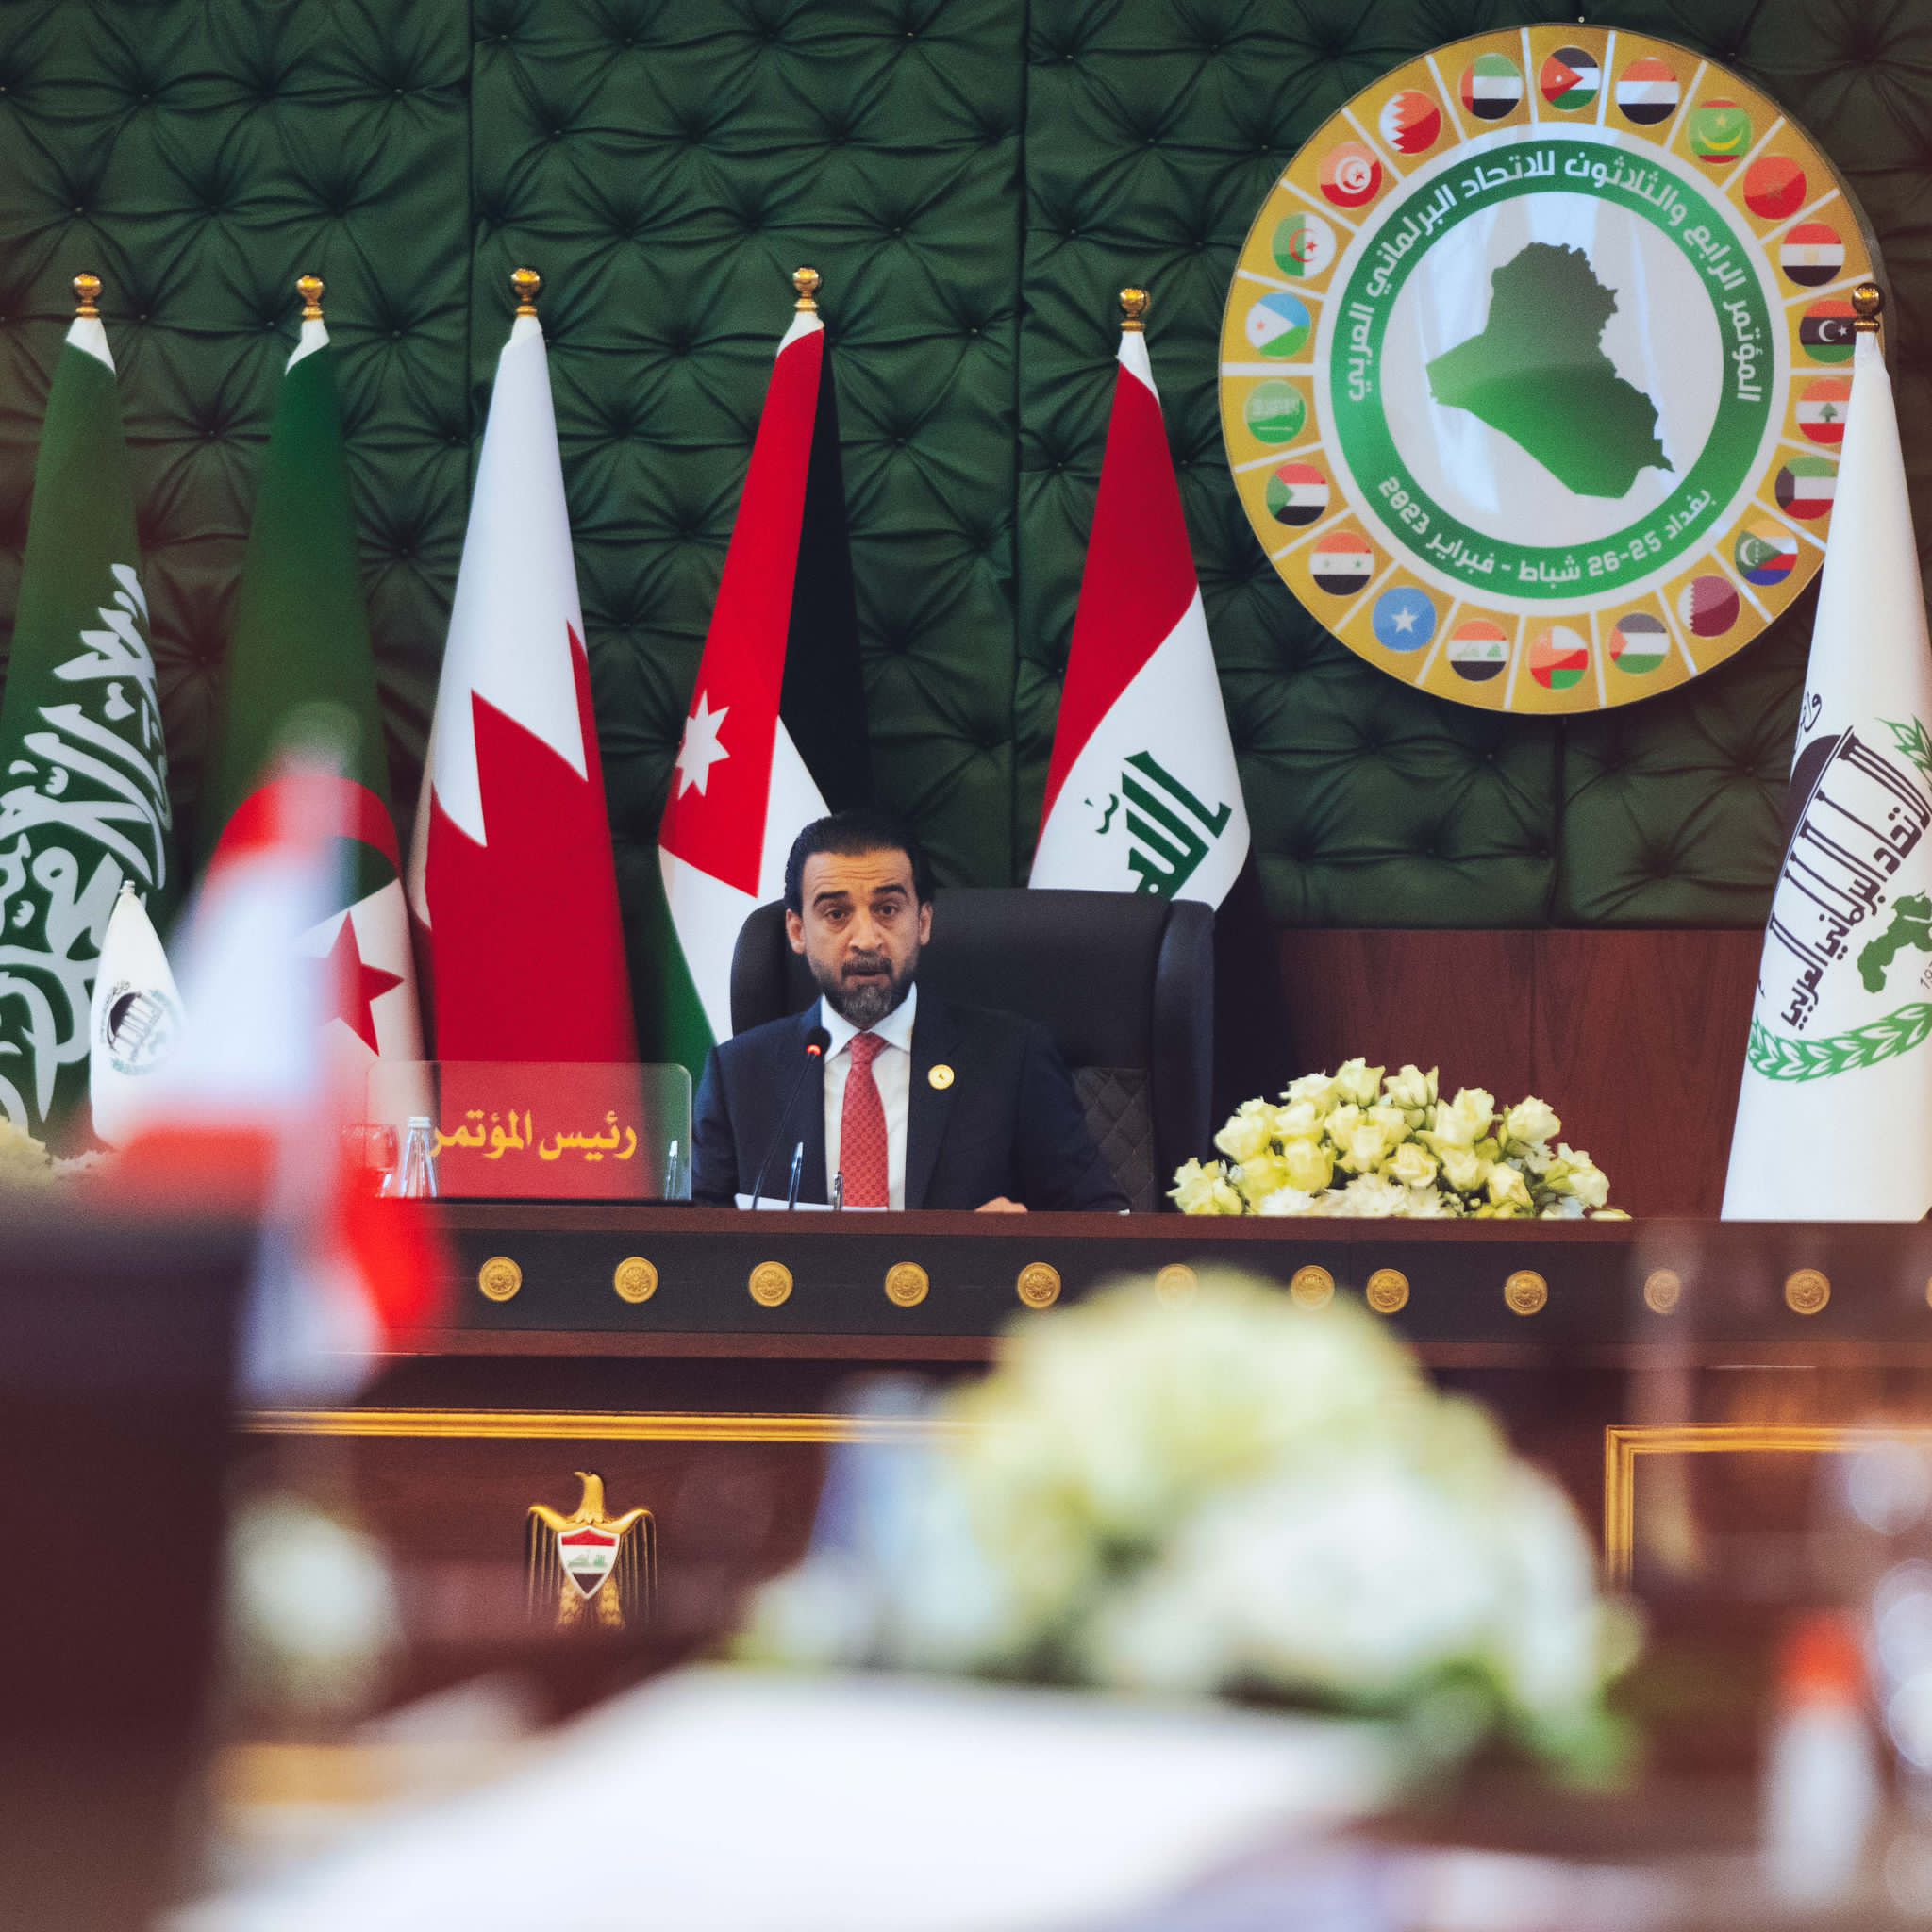  انطلاق مؤتمر الاتحاد البرلماني العربي الـ34 في بغداد بمشاركة الشعبة البرلمانية الكويتية